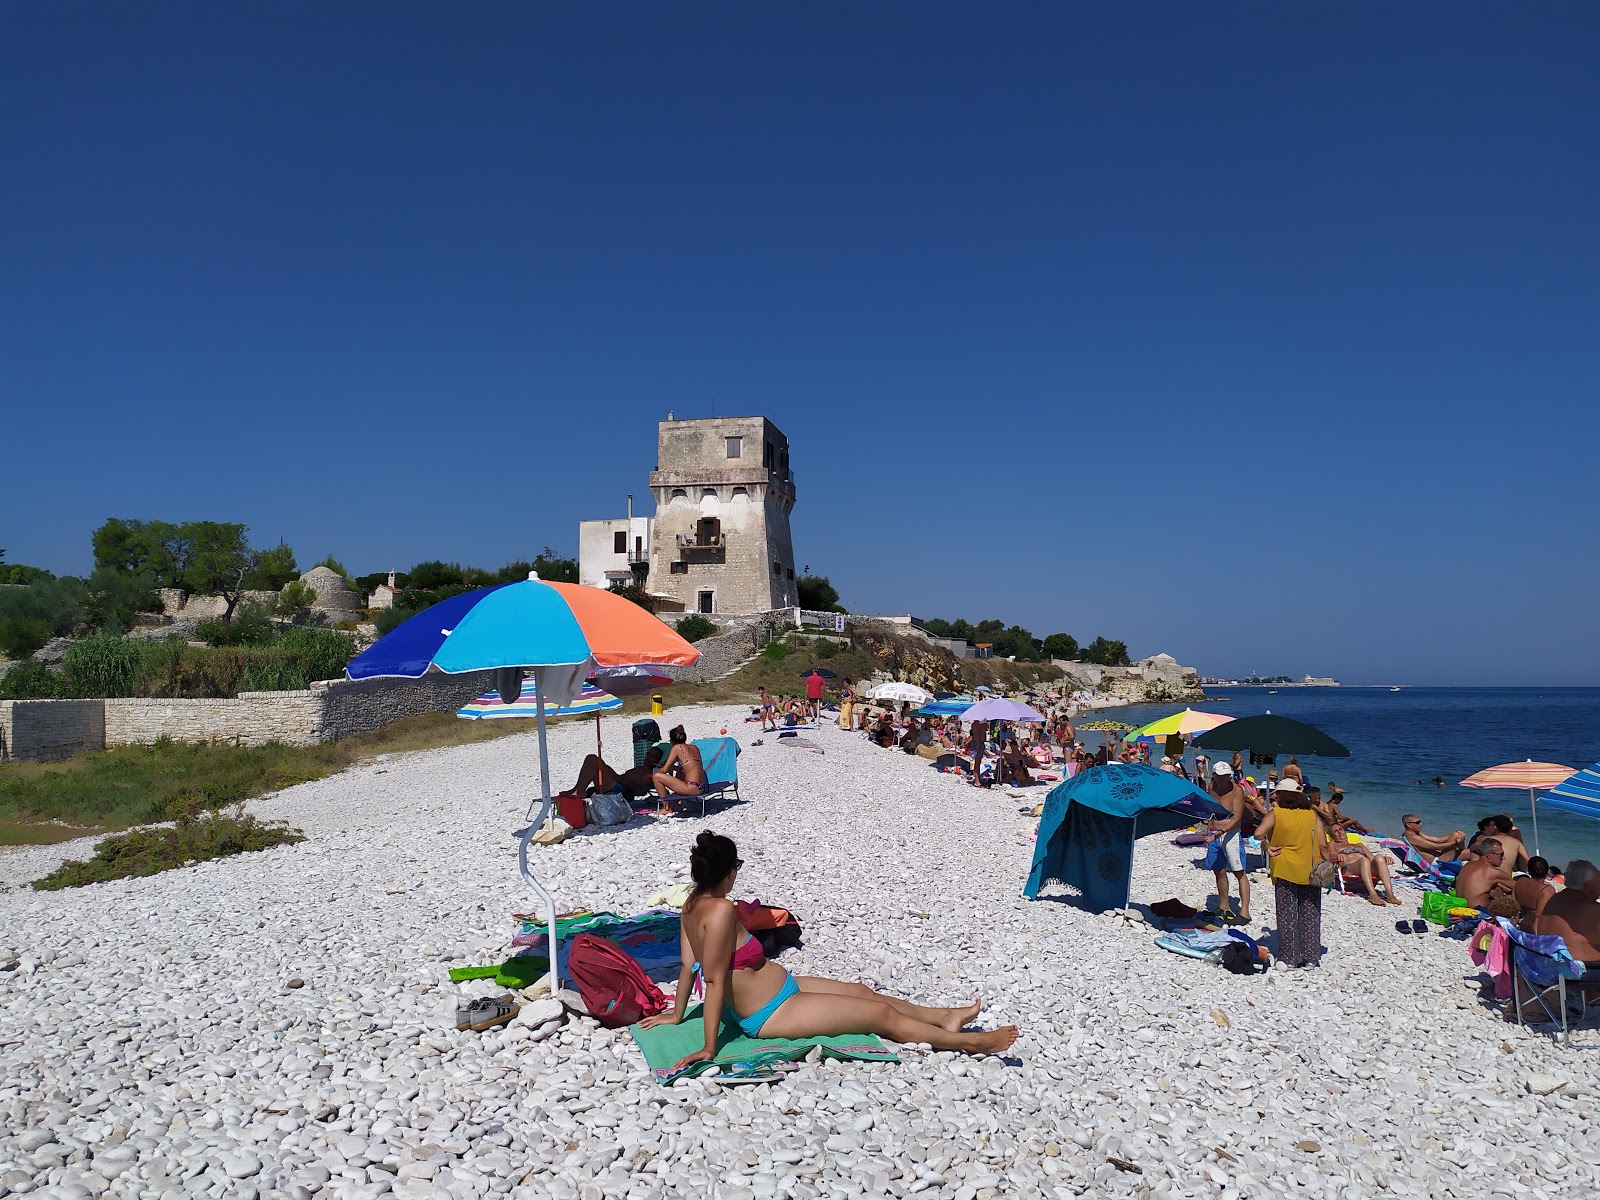 Spiaggia La Torretta'in fotoğrafı hafif çakıl yüzey ile